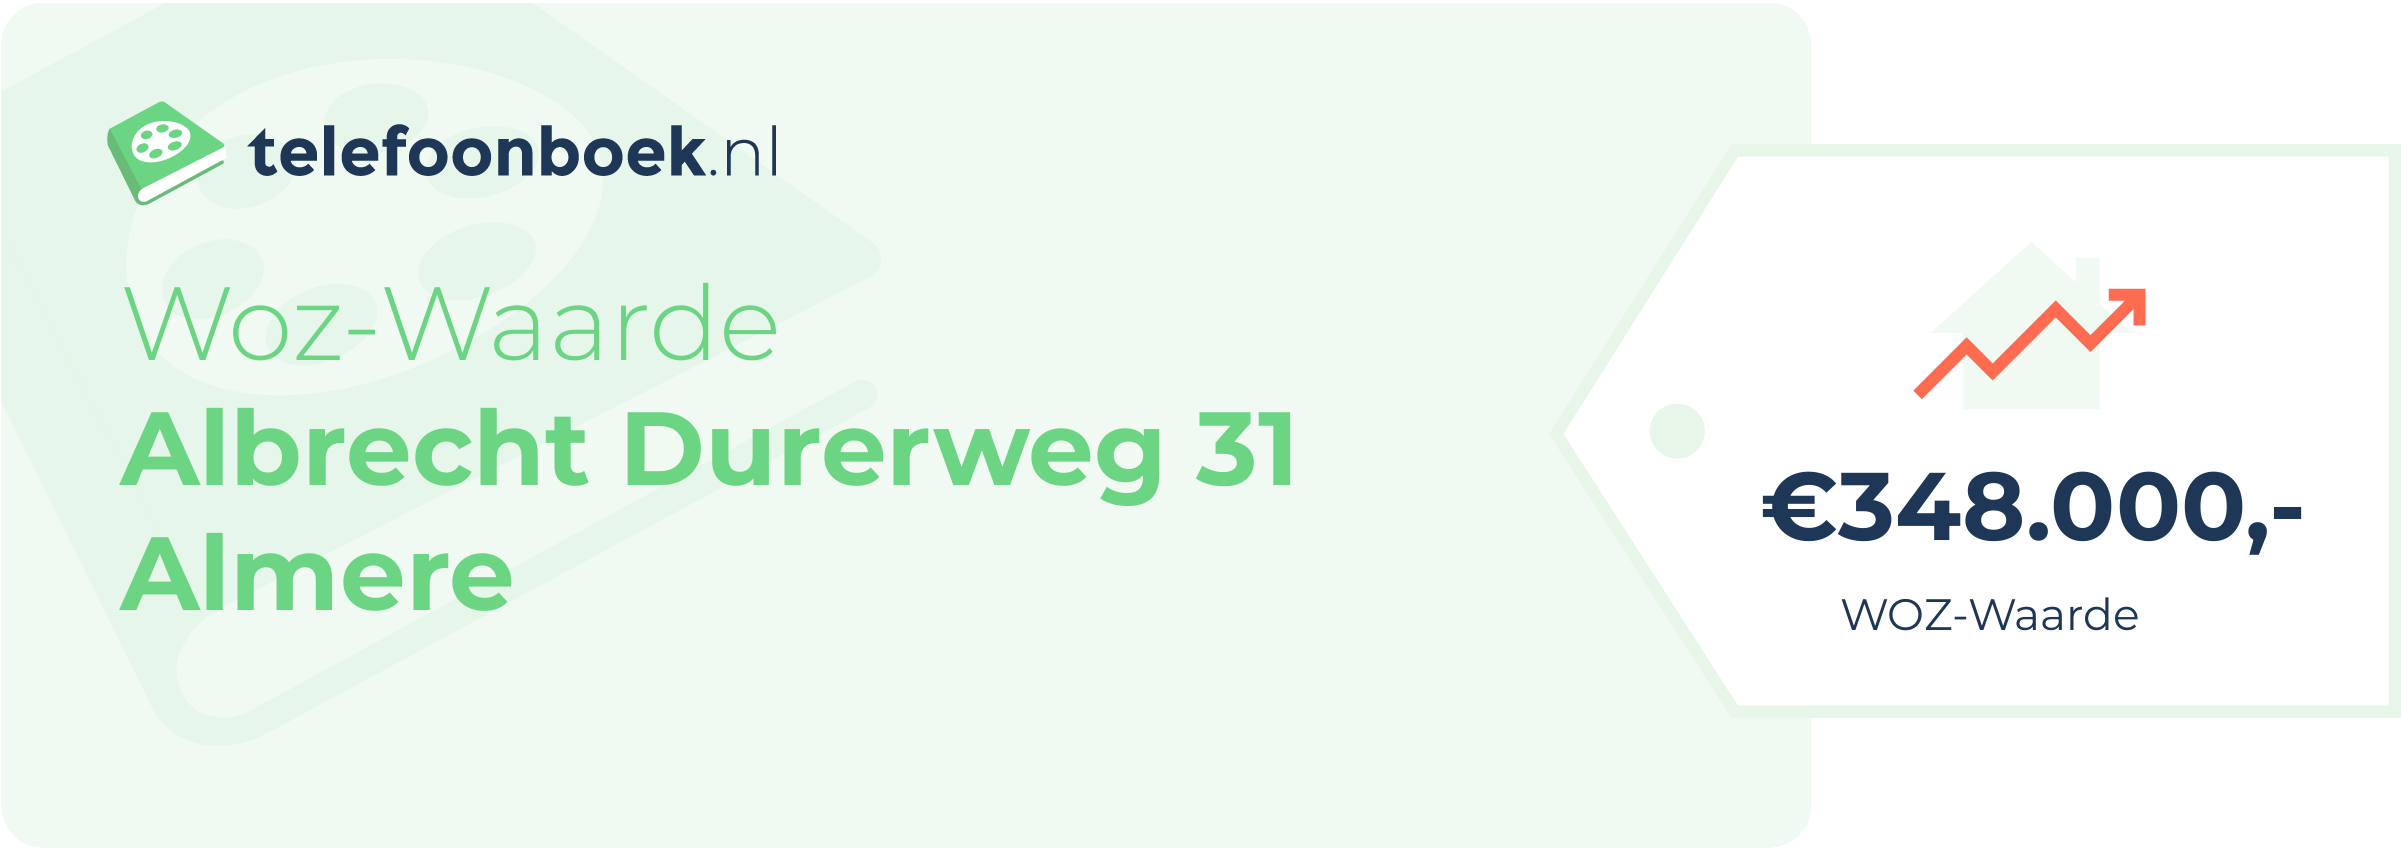 WOZ-waarde Albrecht Durerweg 31 Almere